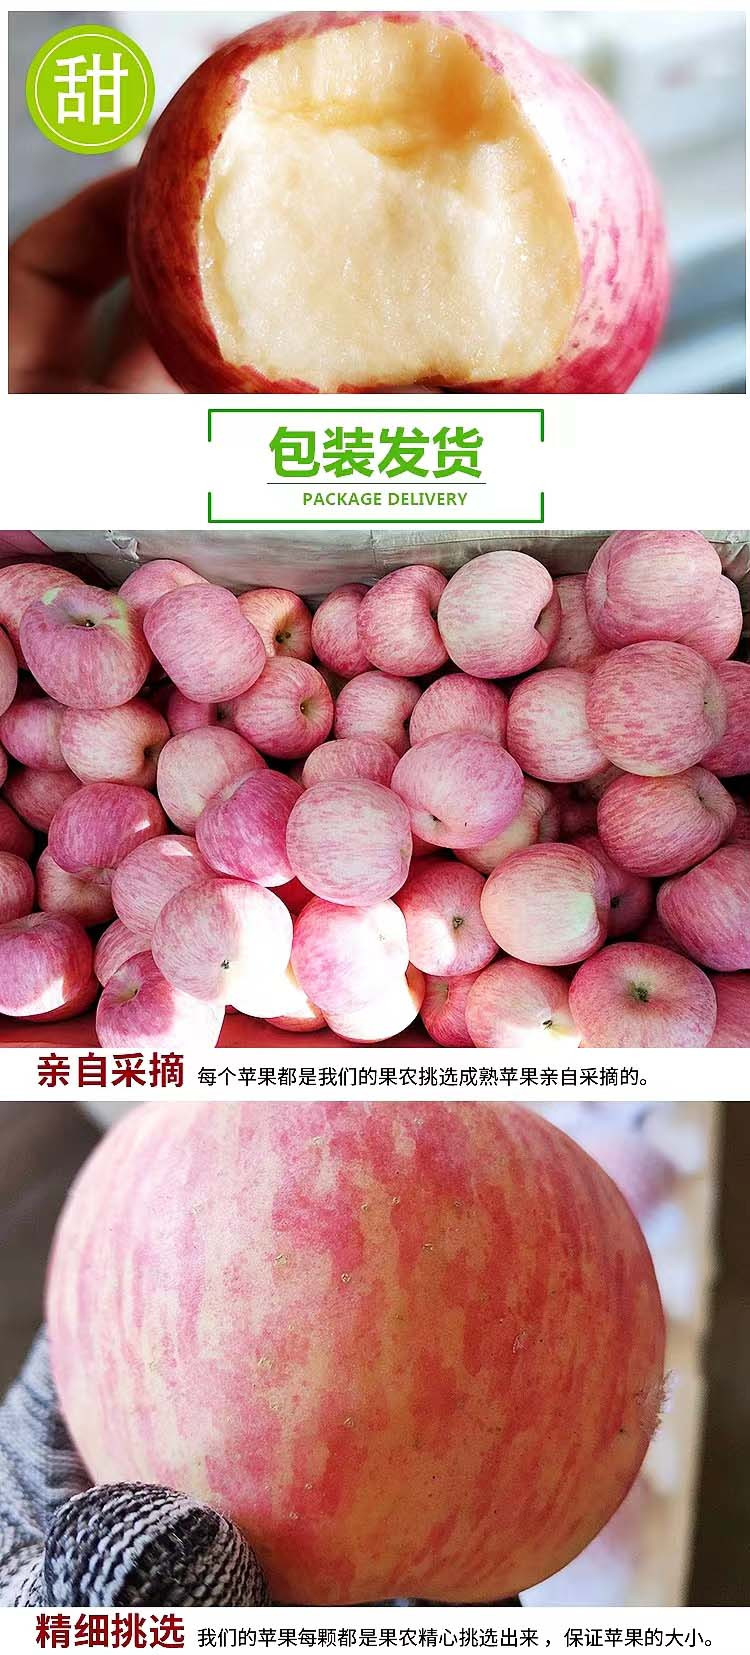 农家自产自销 烟台红富士苹果 大果（果径80-85左右）